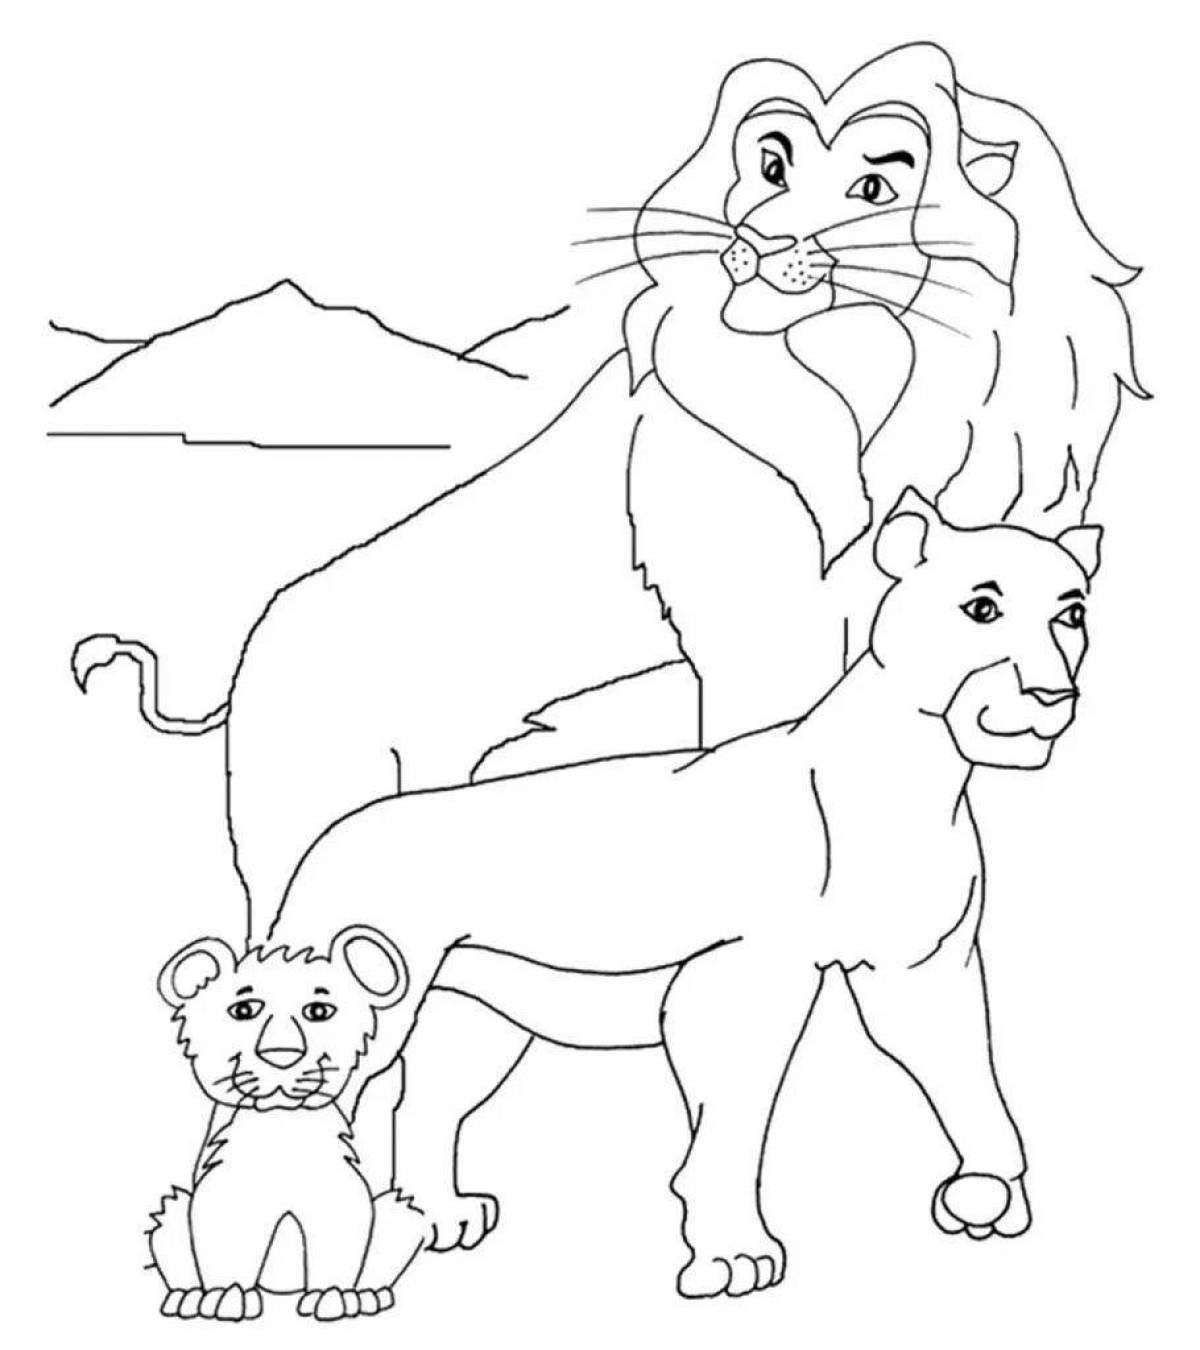 Раскраска царственная смотрящая львица